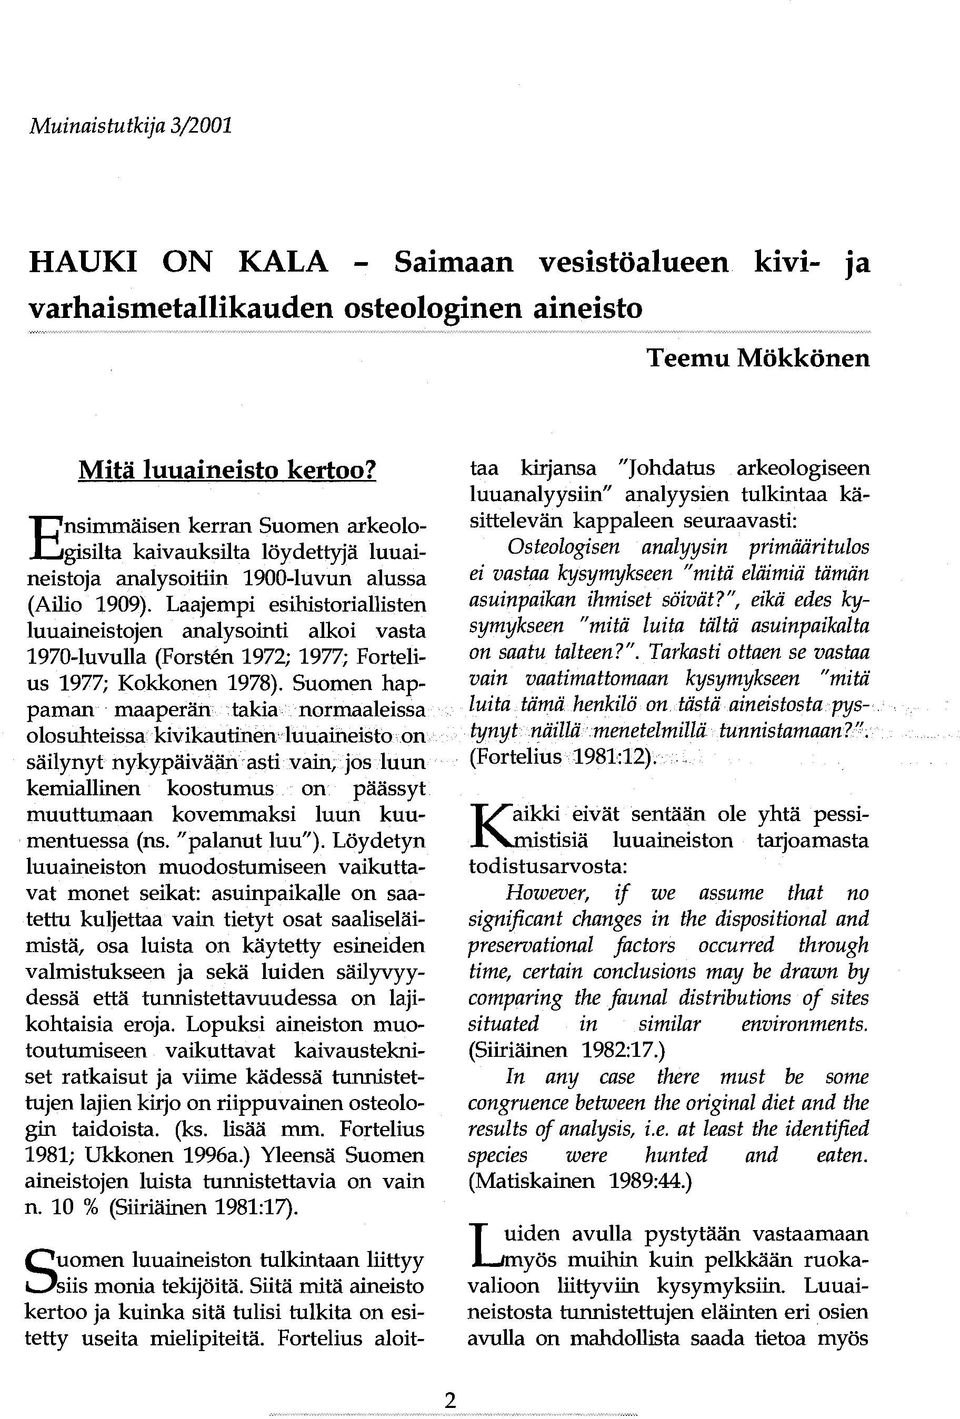 Laajempi esihistoriallisten luuaineistojen analysointi alkoi vasta 1970-luvulla (Forsten 1972; 1977; Fortelius 1977; Kokkonen 1978).